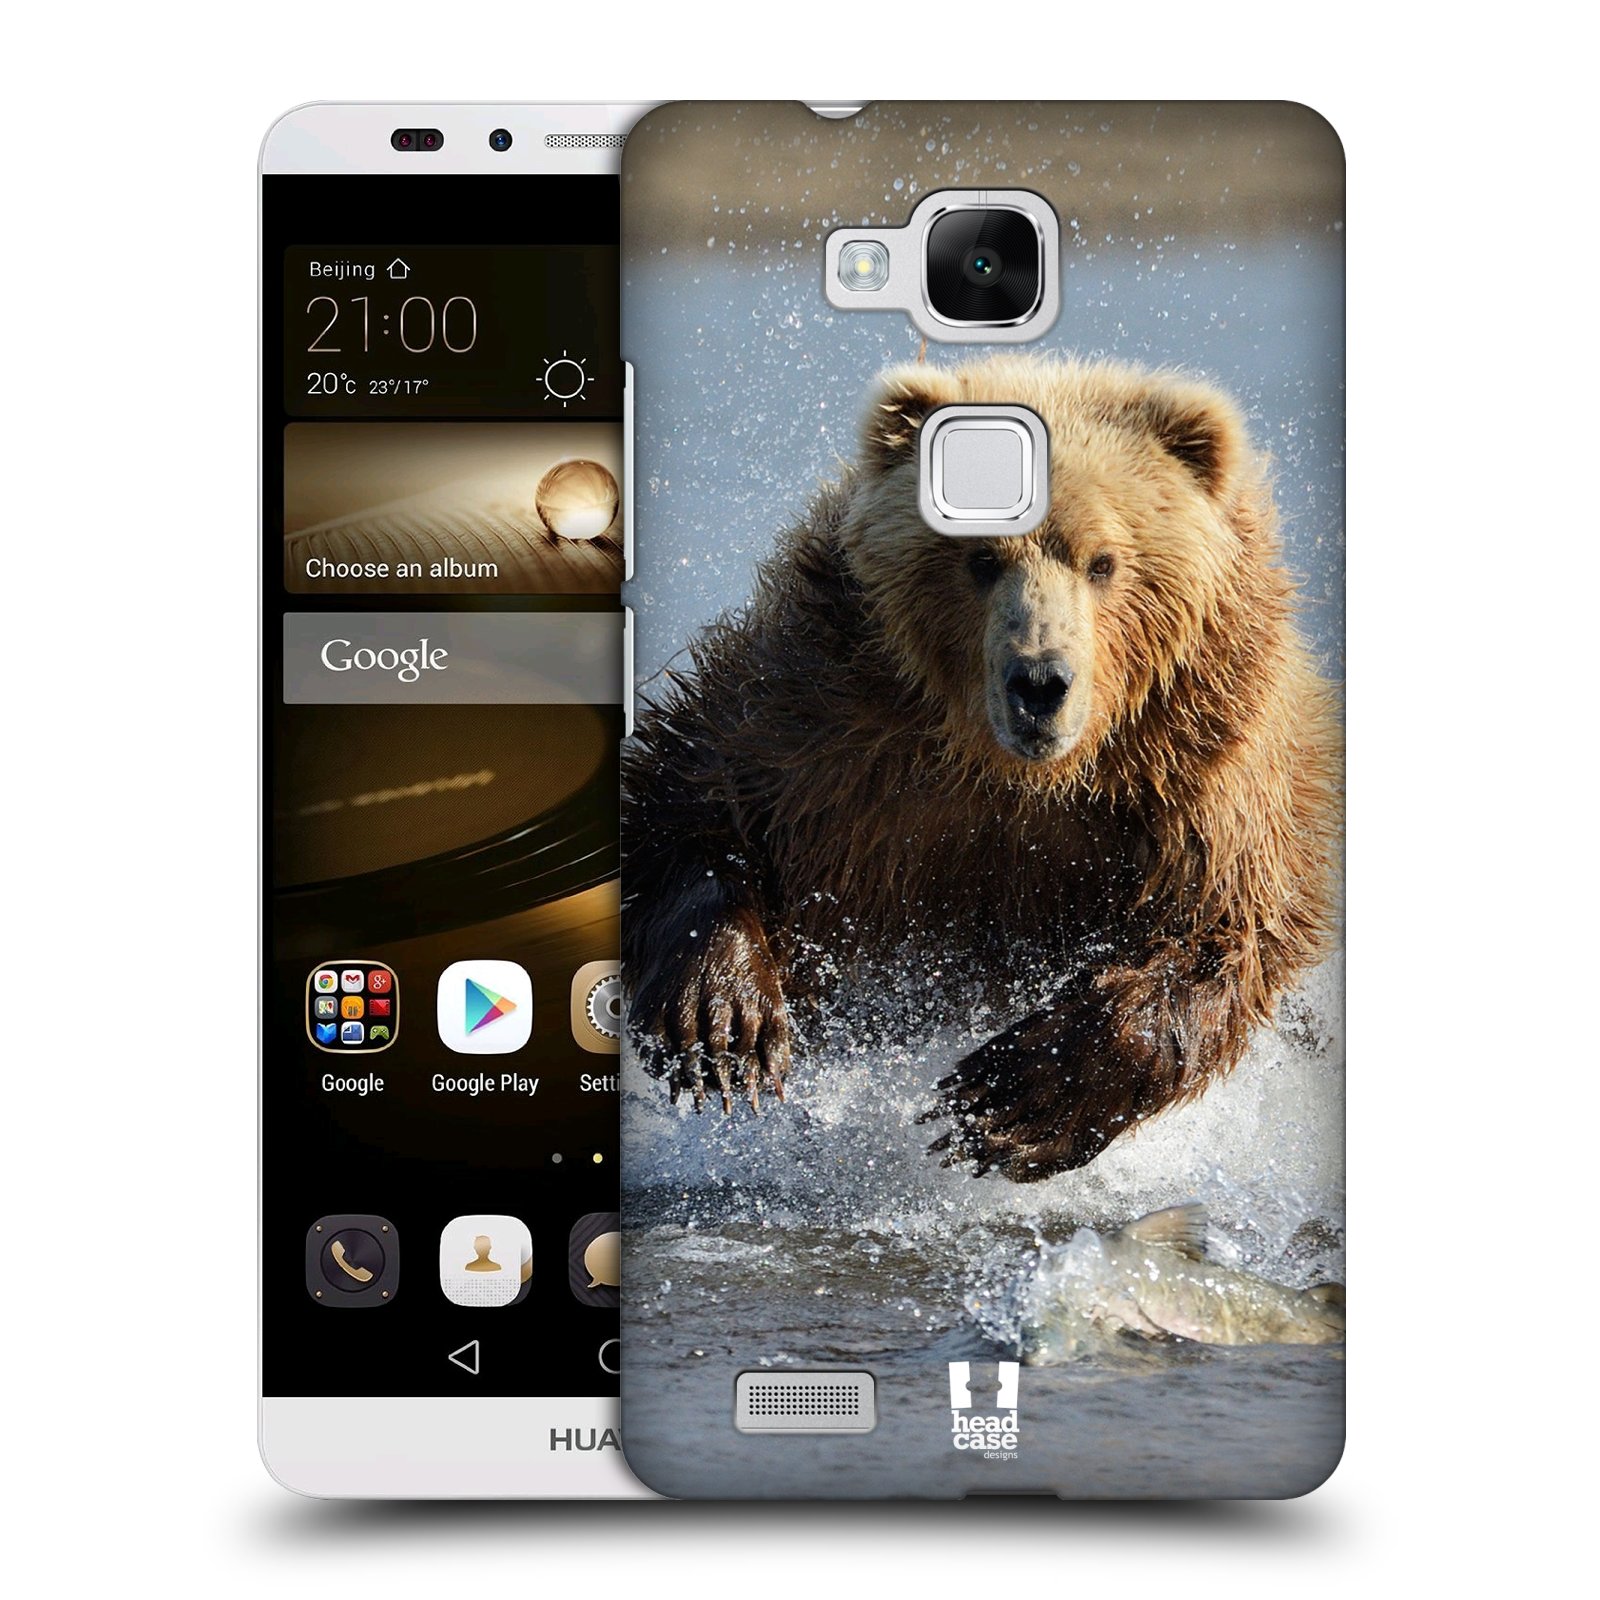 HEAD CASE plastový obal na mobil Huawei Mate 7 vzor Divočina, Divoký život a zvířata foto MEDVĚD GRIZZLY HŇEDÁ